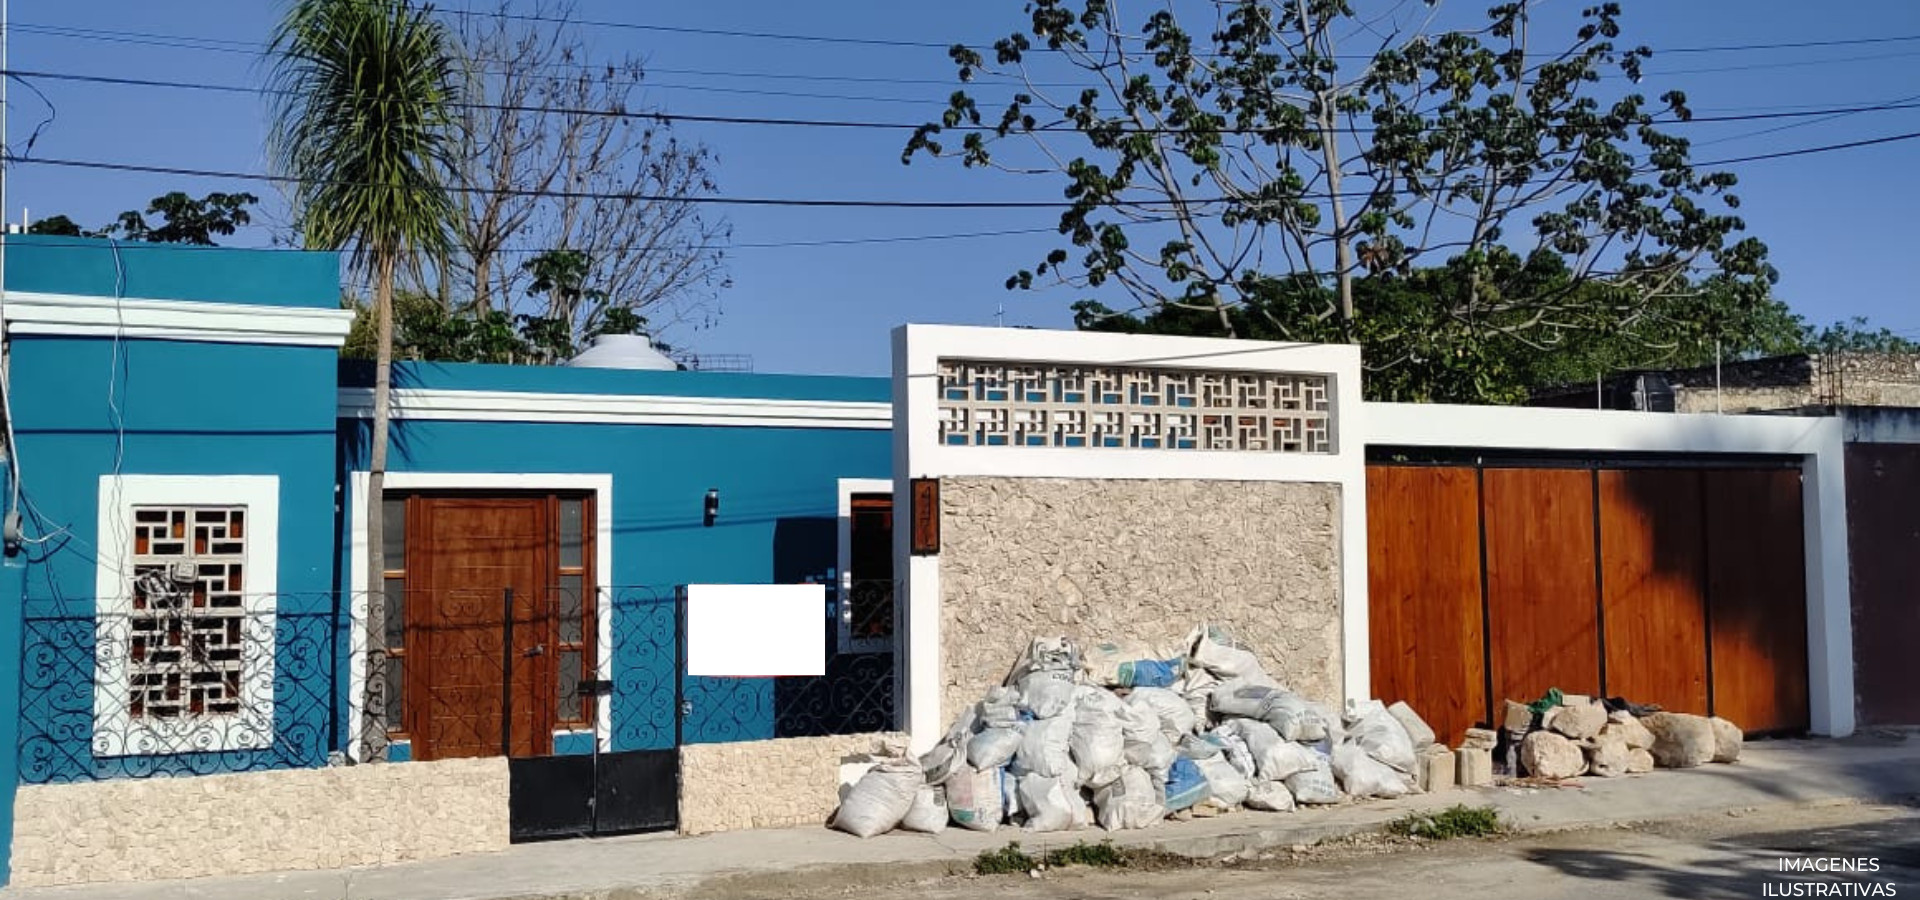 Venta de casa de una planta cerca del Centro de Mérida Yucatán. NT-410 (C)